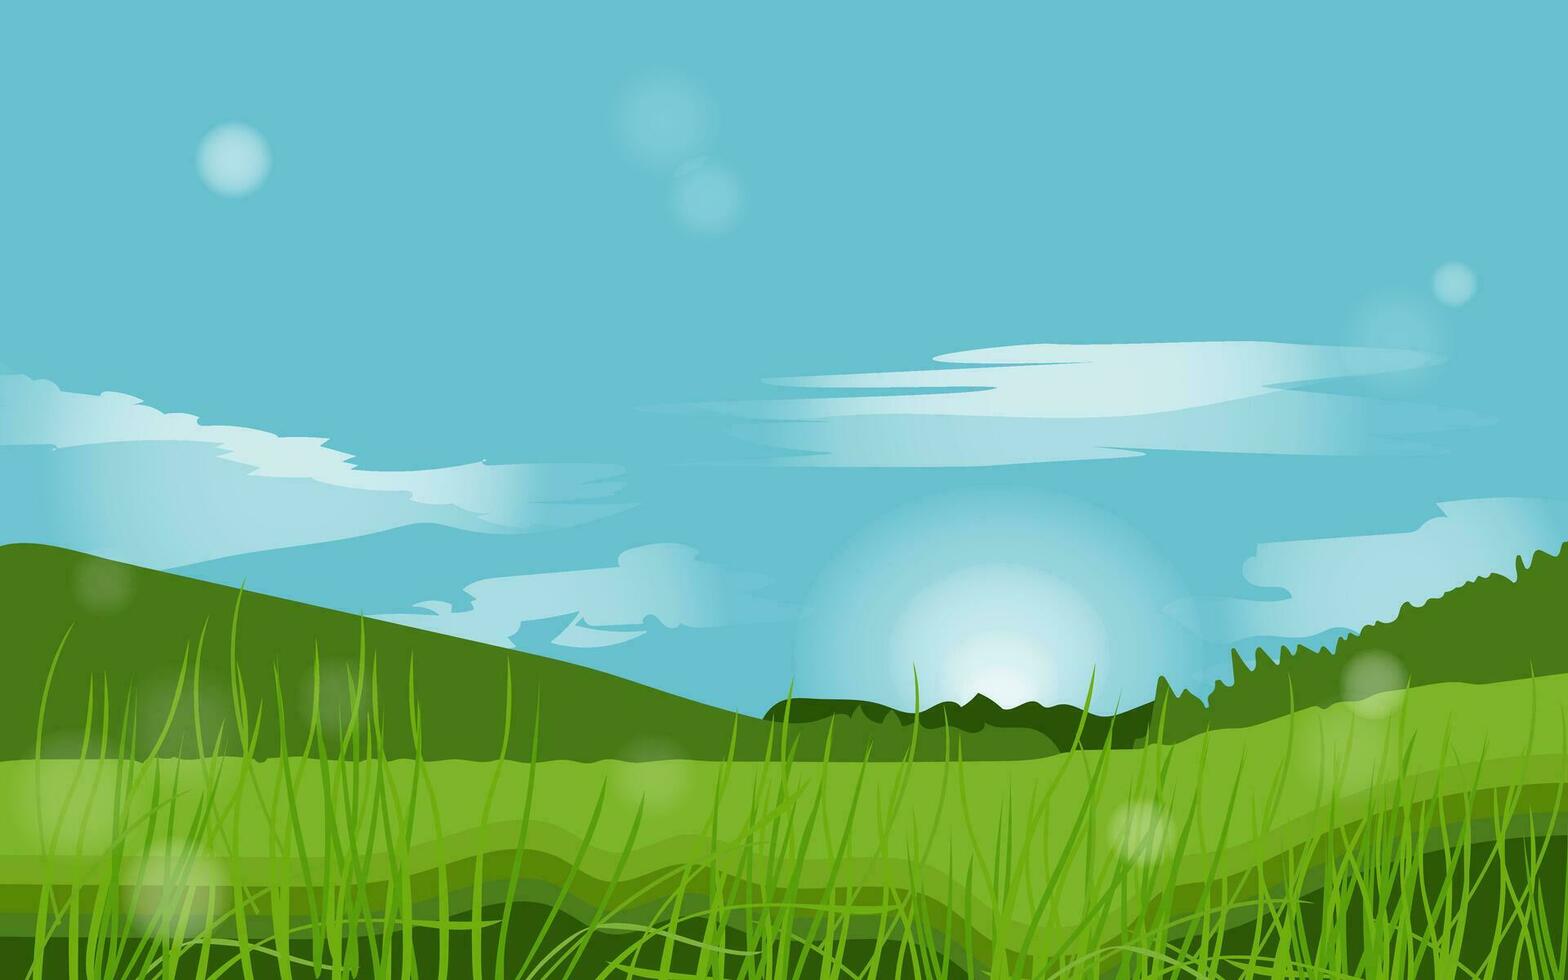 Sommer- Wiese Feld.Natur Landschaft zum Tapeten oder Panorama Aussicht auf Wiese, Wiese oder Lichtung Horizont Szene mit Himmel und Sonne, Gras und Bäume, Wolken. Vektor Illustration